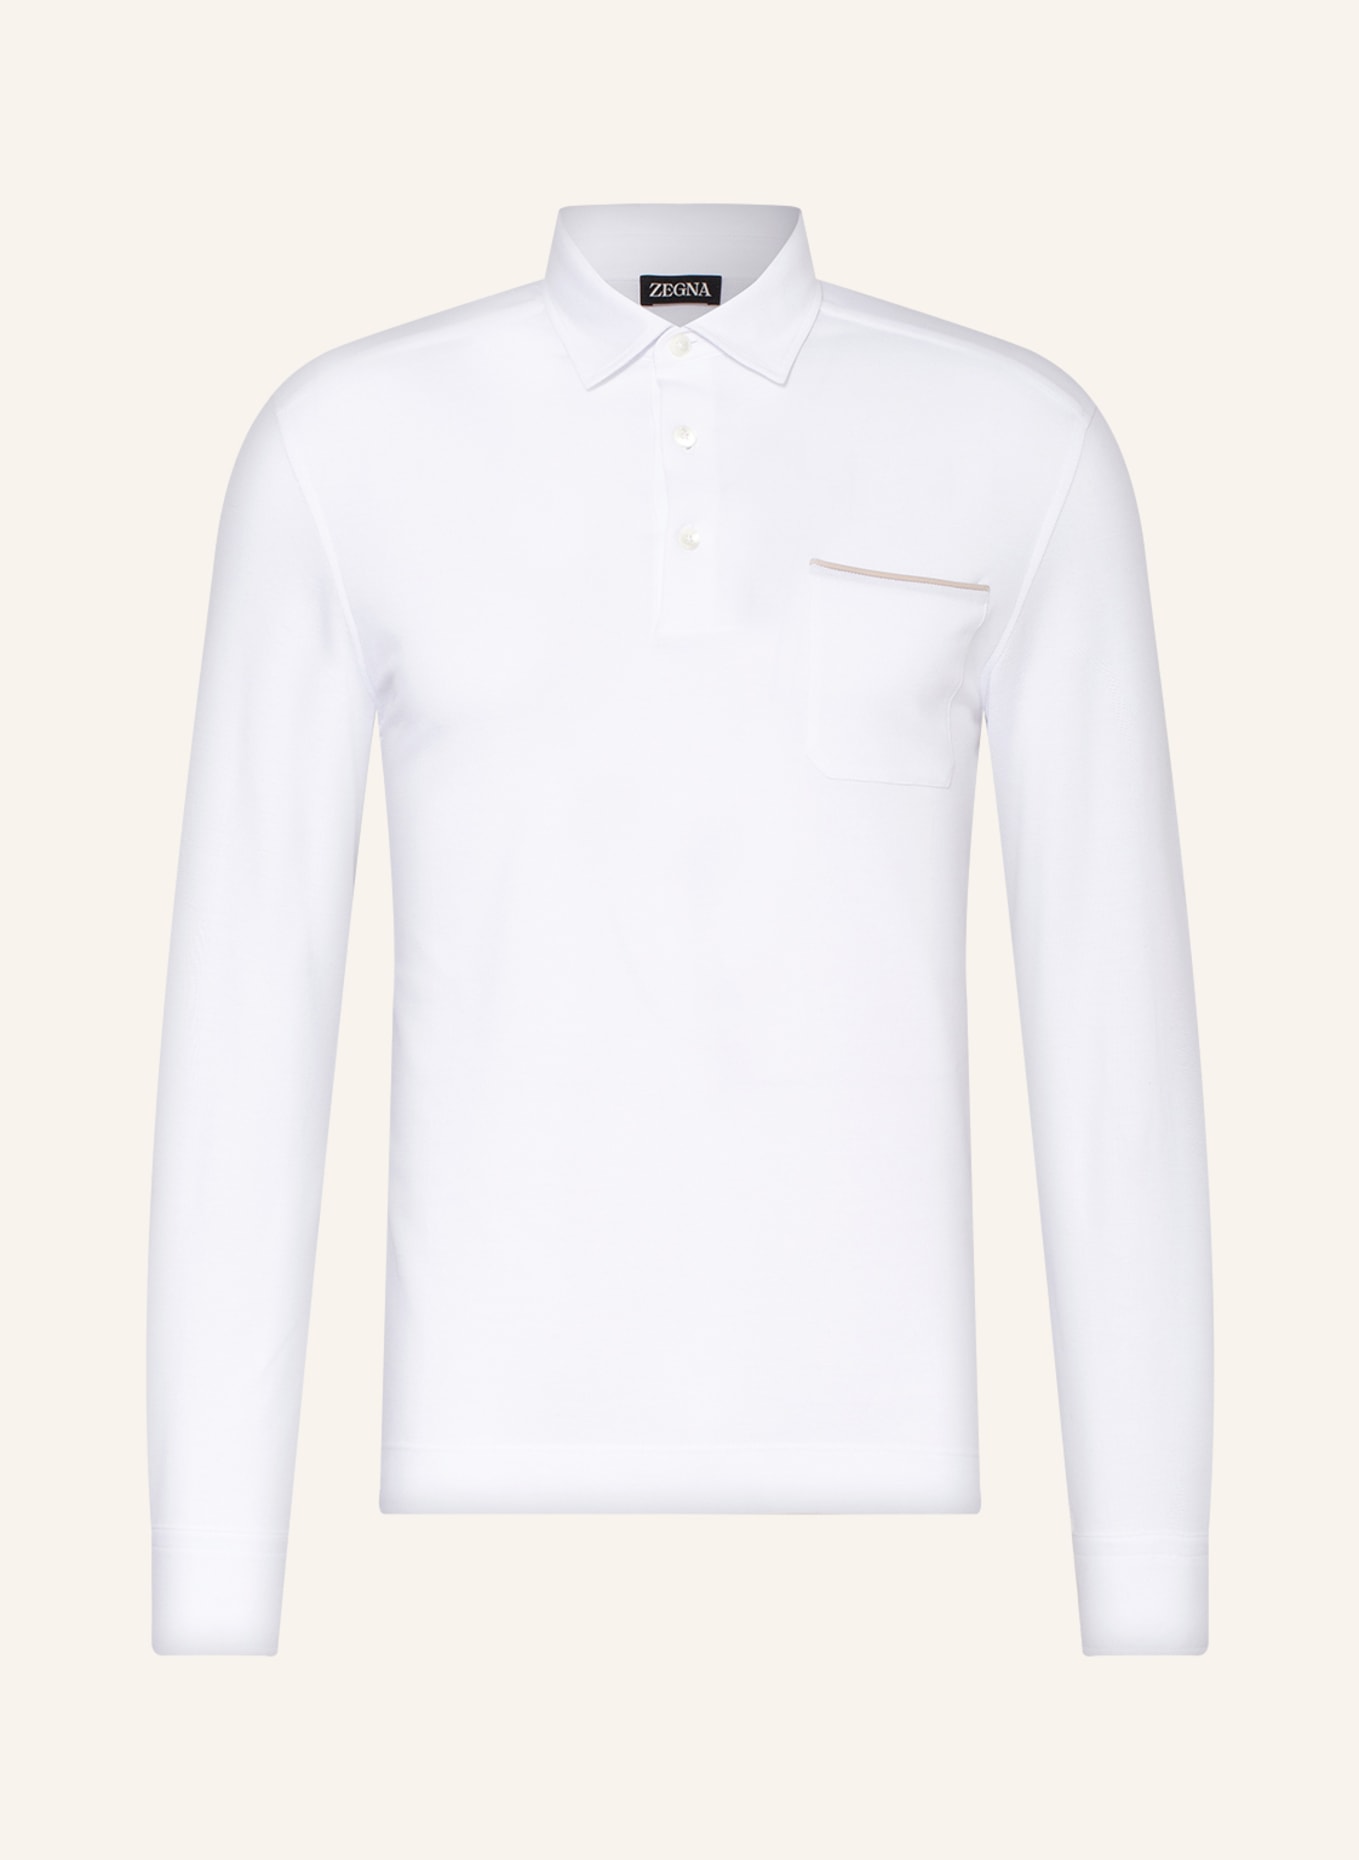 ZEGNA Piqué polo shirt, Color: WHITE (Image 1)